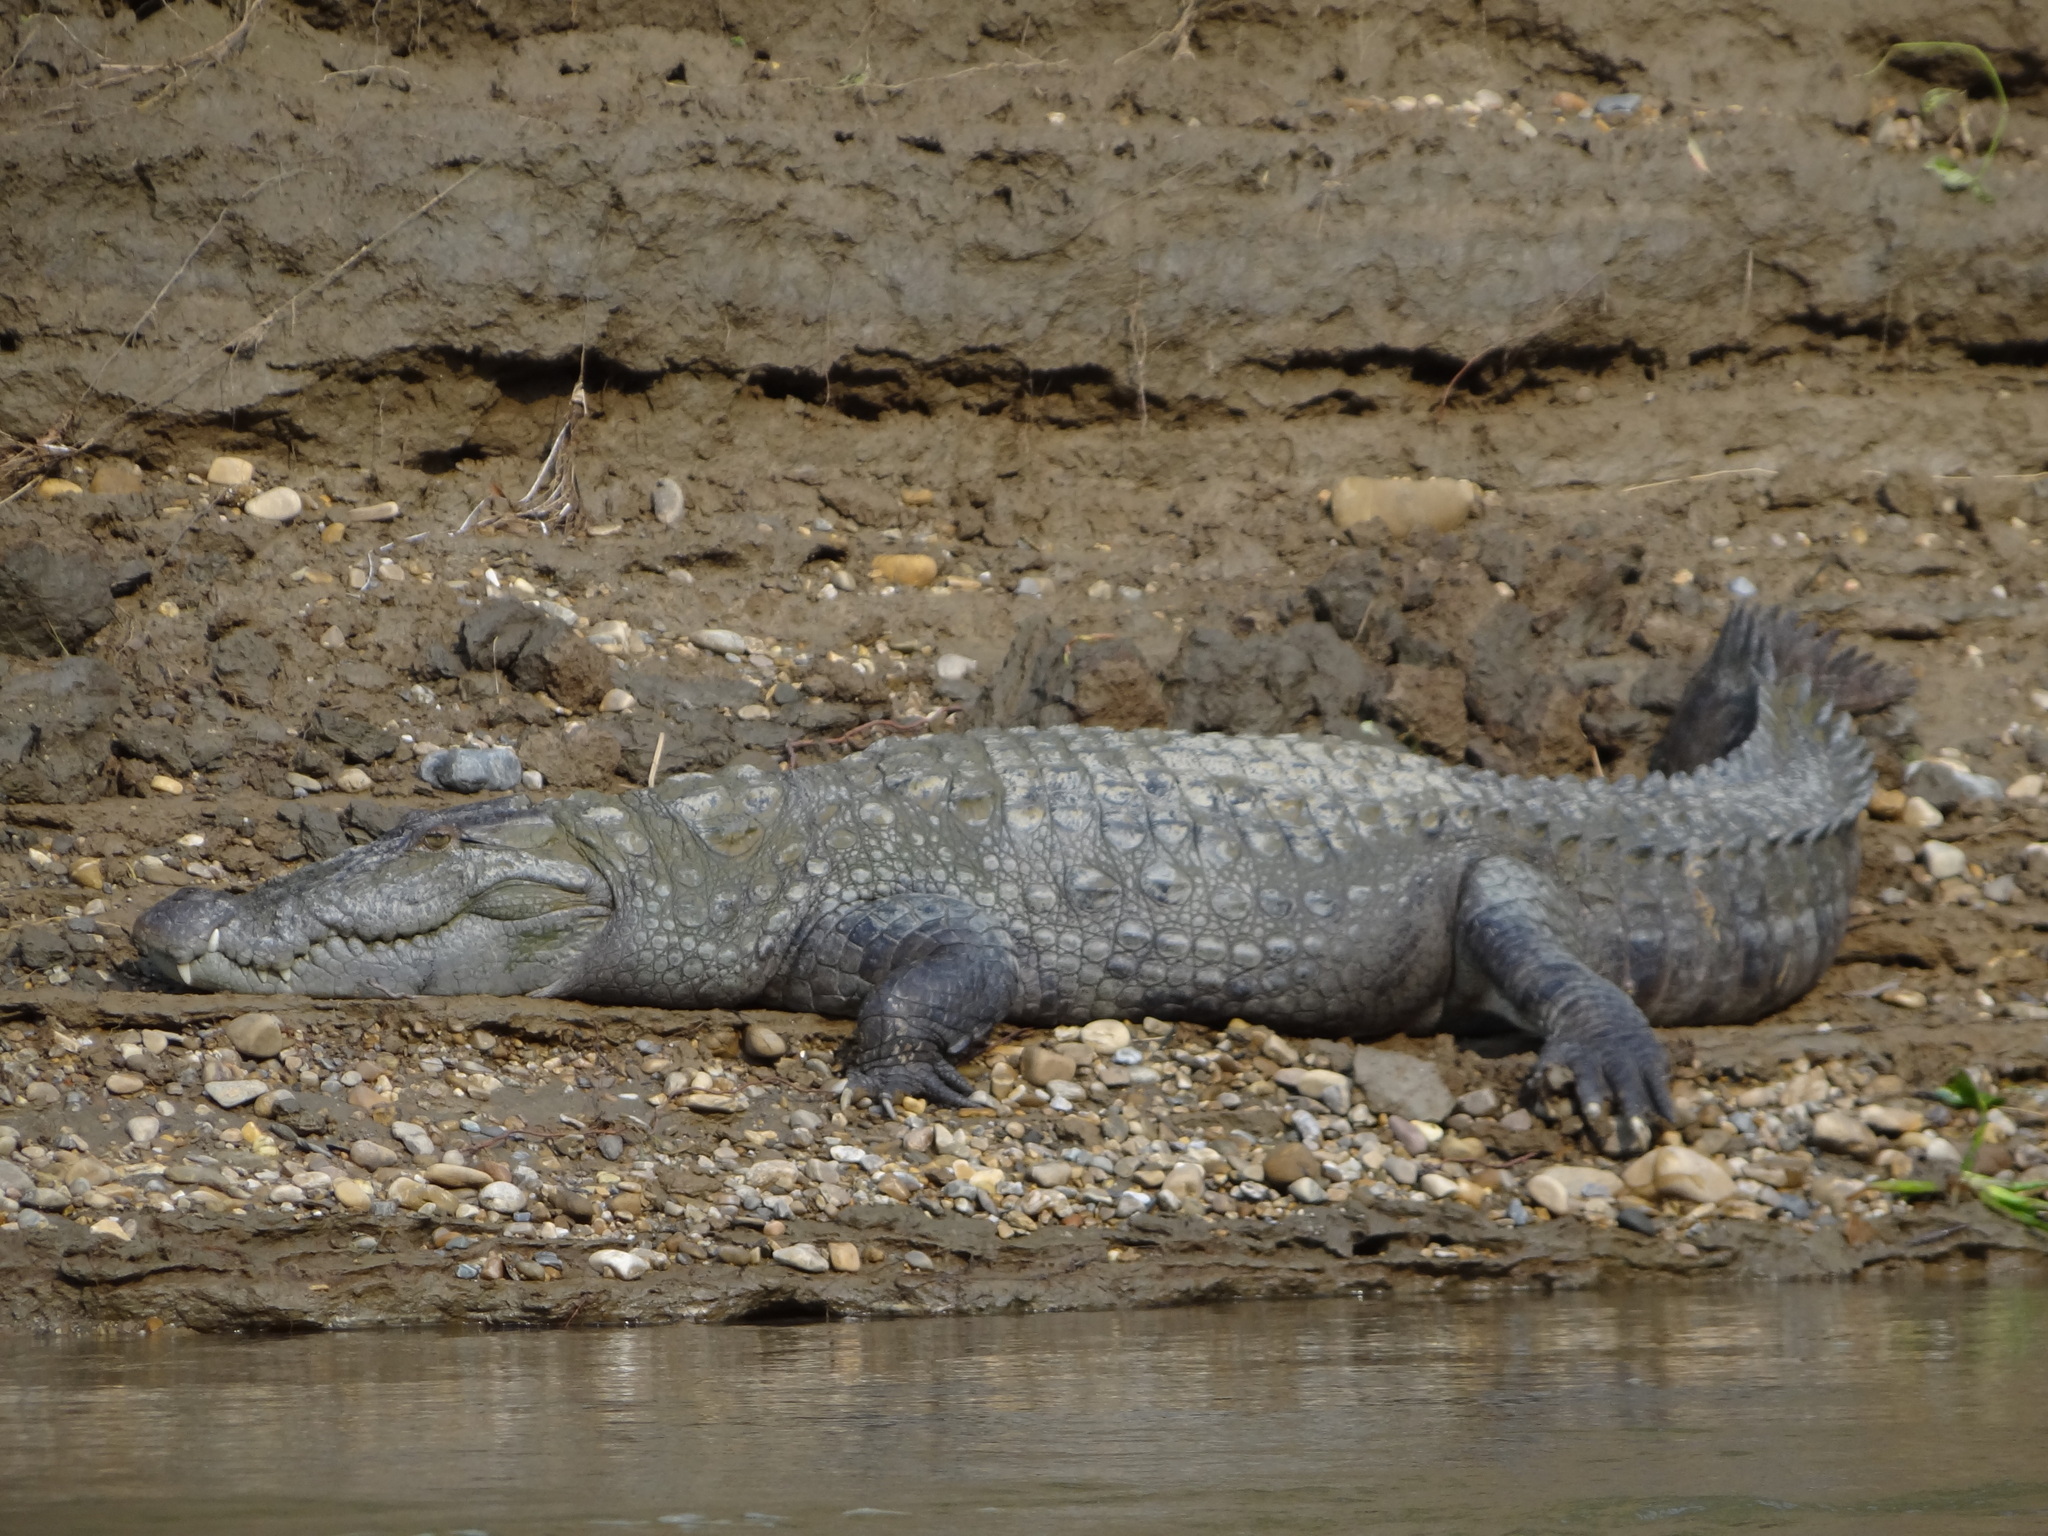 Image of marsh crocodile